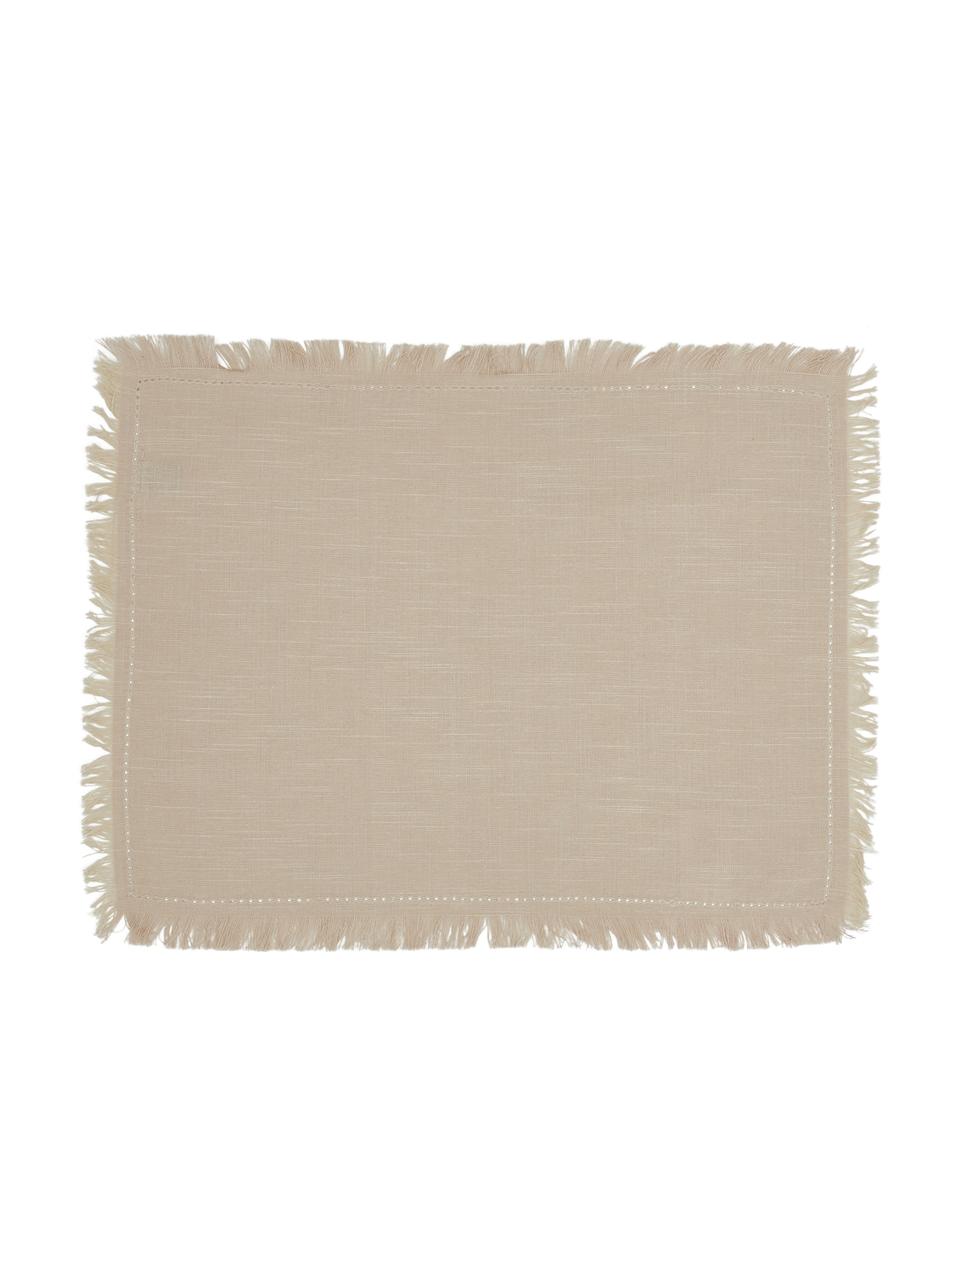 Komplet podkładek z frędzlami Henley, 2 szt., 100% bawełna, Beżowy, S 35 x D 45 cm